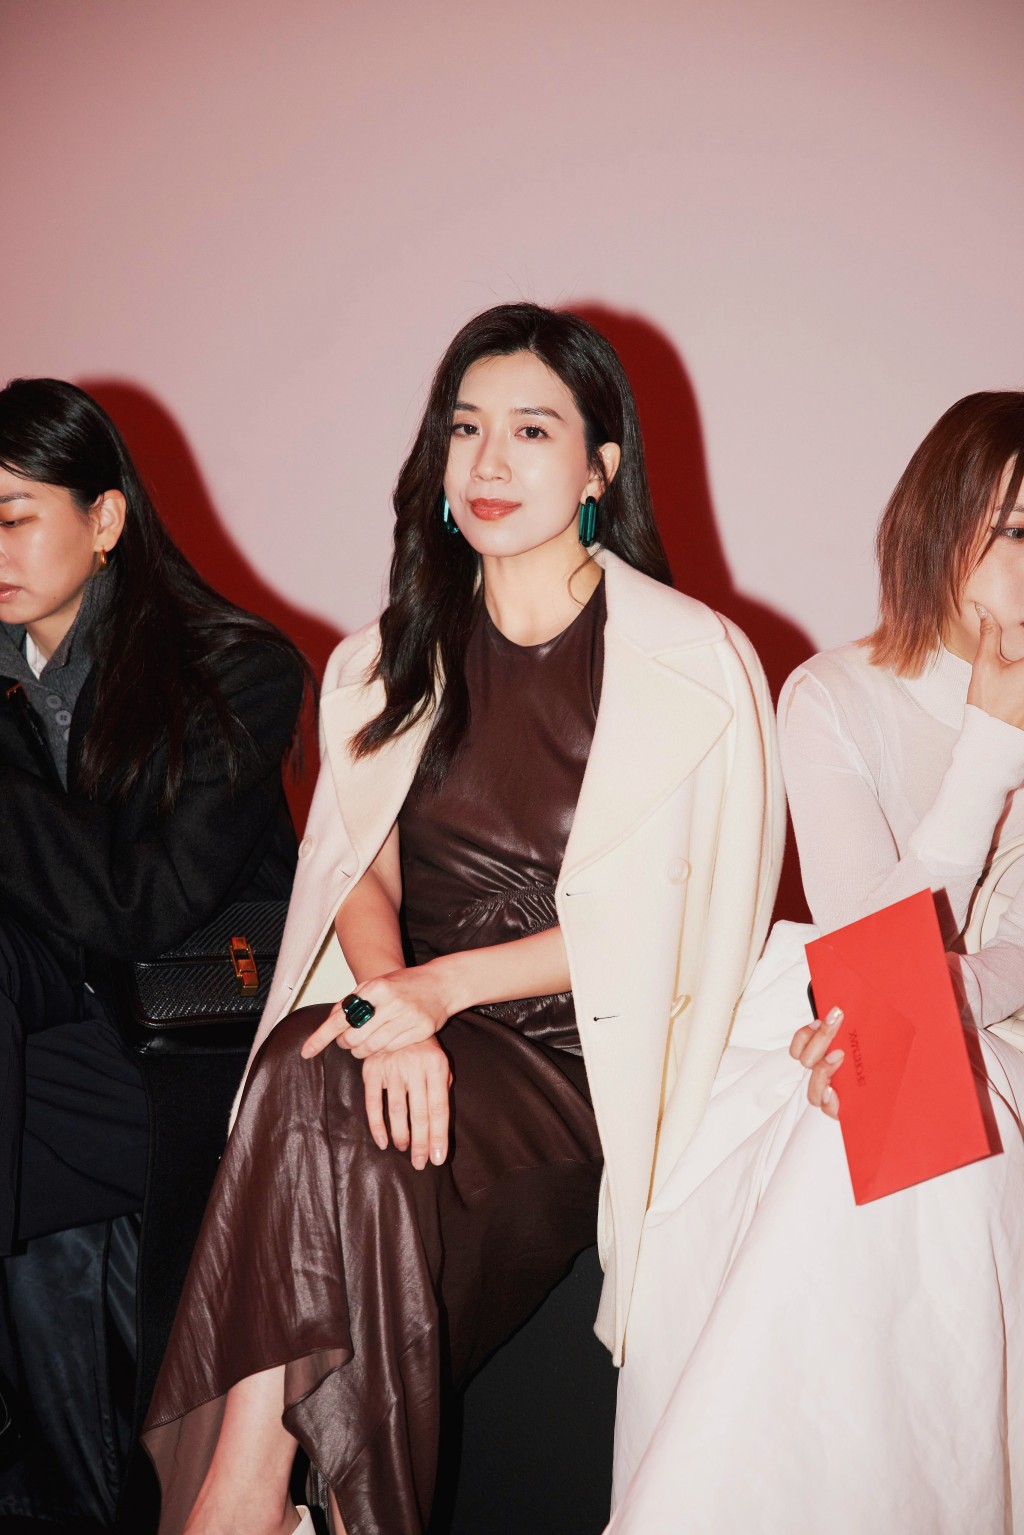 黄智雯上月获时尚品牌邀请到意大利出席时装骚。